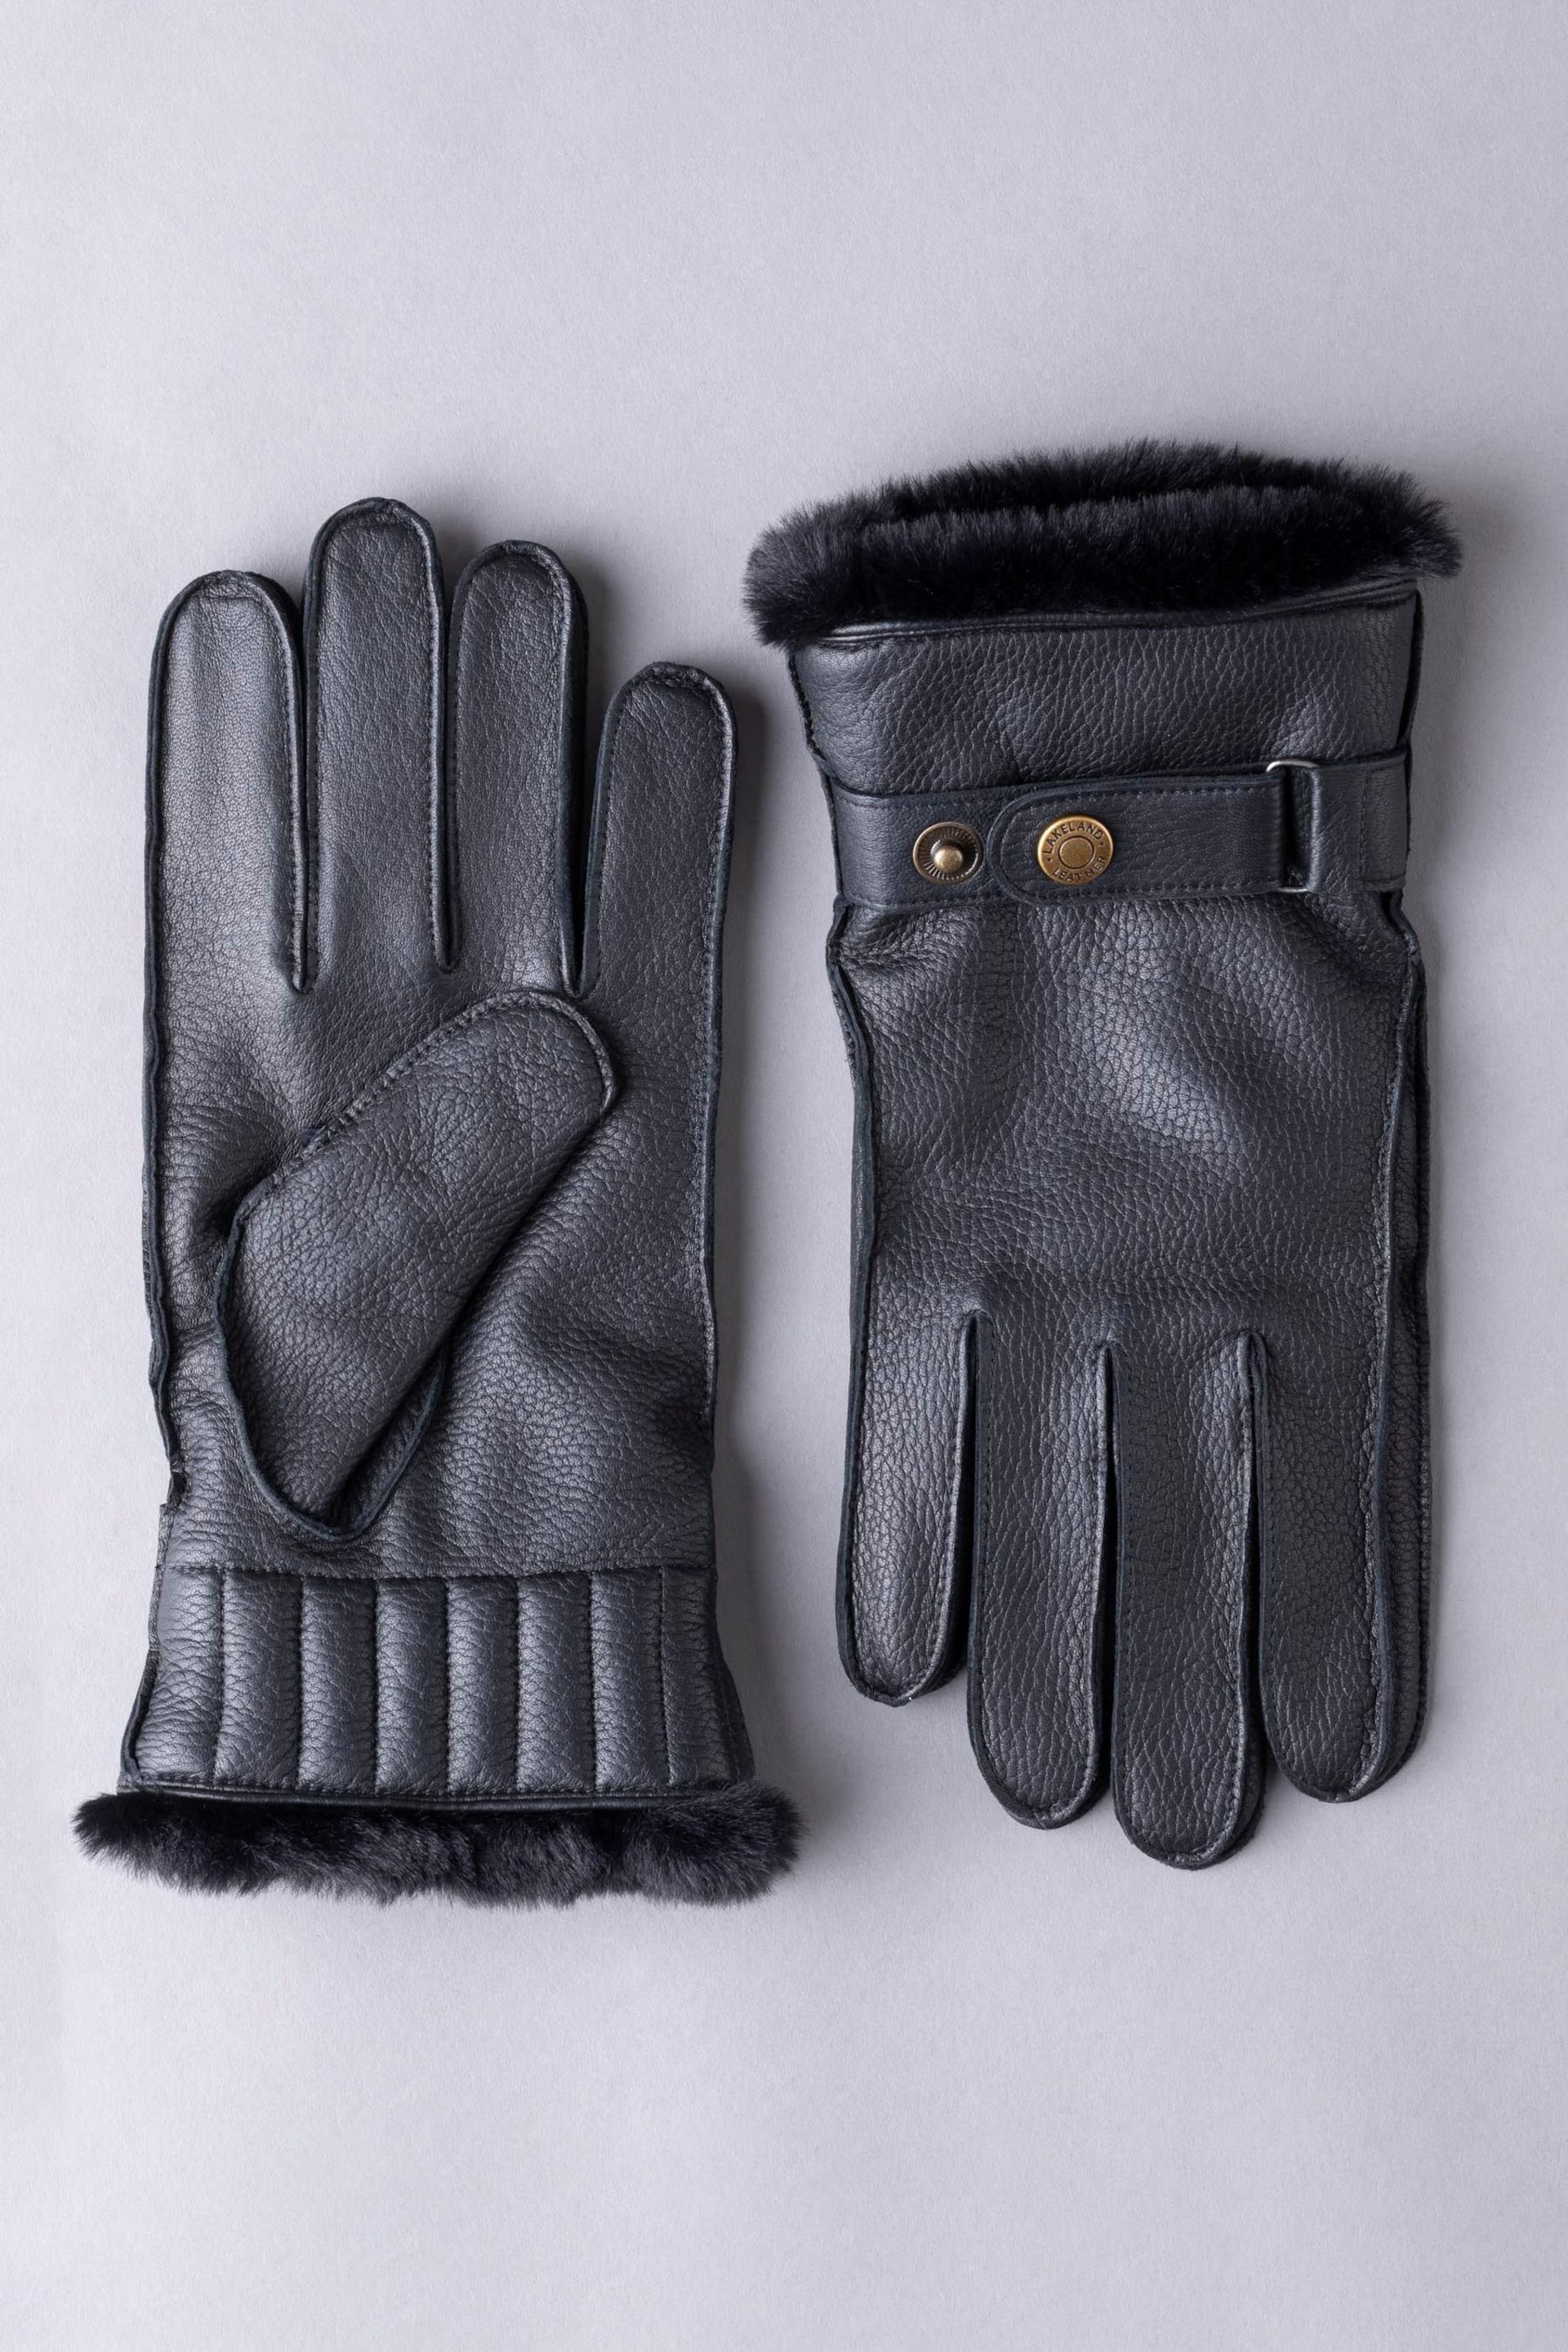 Lakeland Leather Milne Leather Gloves - Image 1 of 3